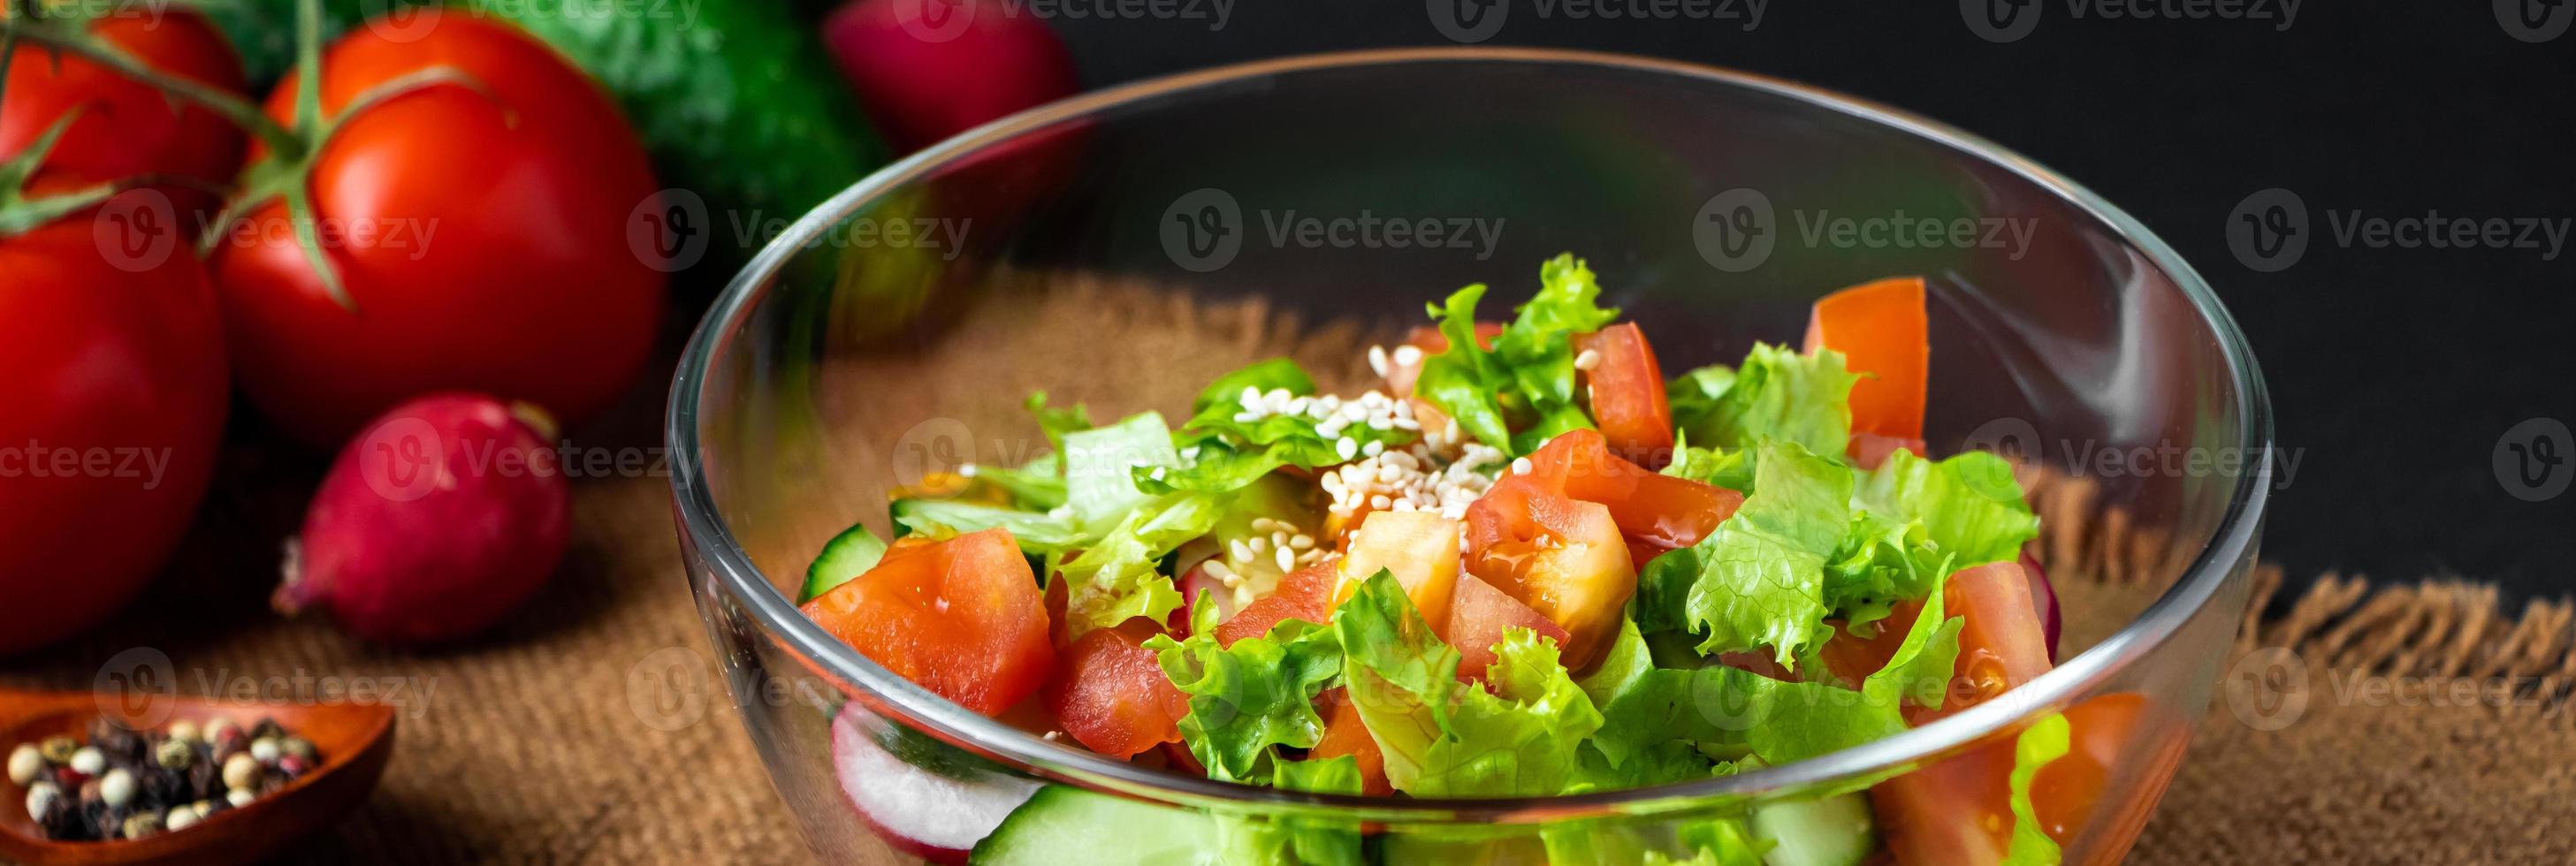 salada de legumes de verão sazonal em uma tigela de vidro em fundo escuro. comida orgânica vegana, refeição dietética em estilo rústico. foto